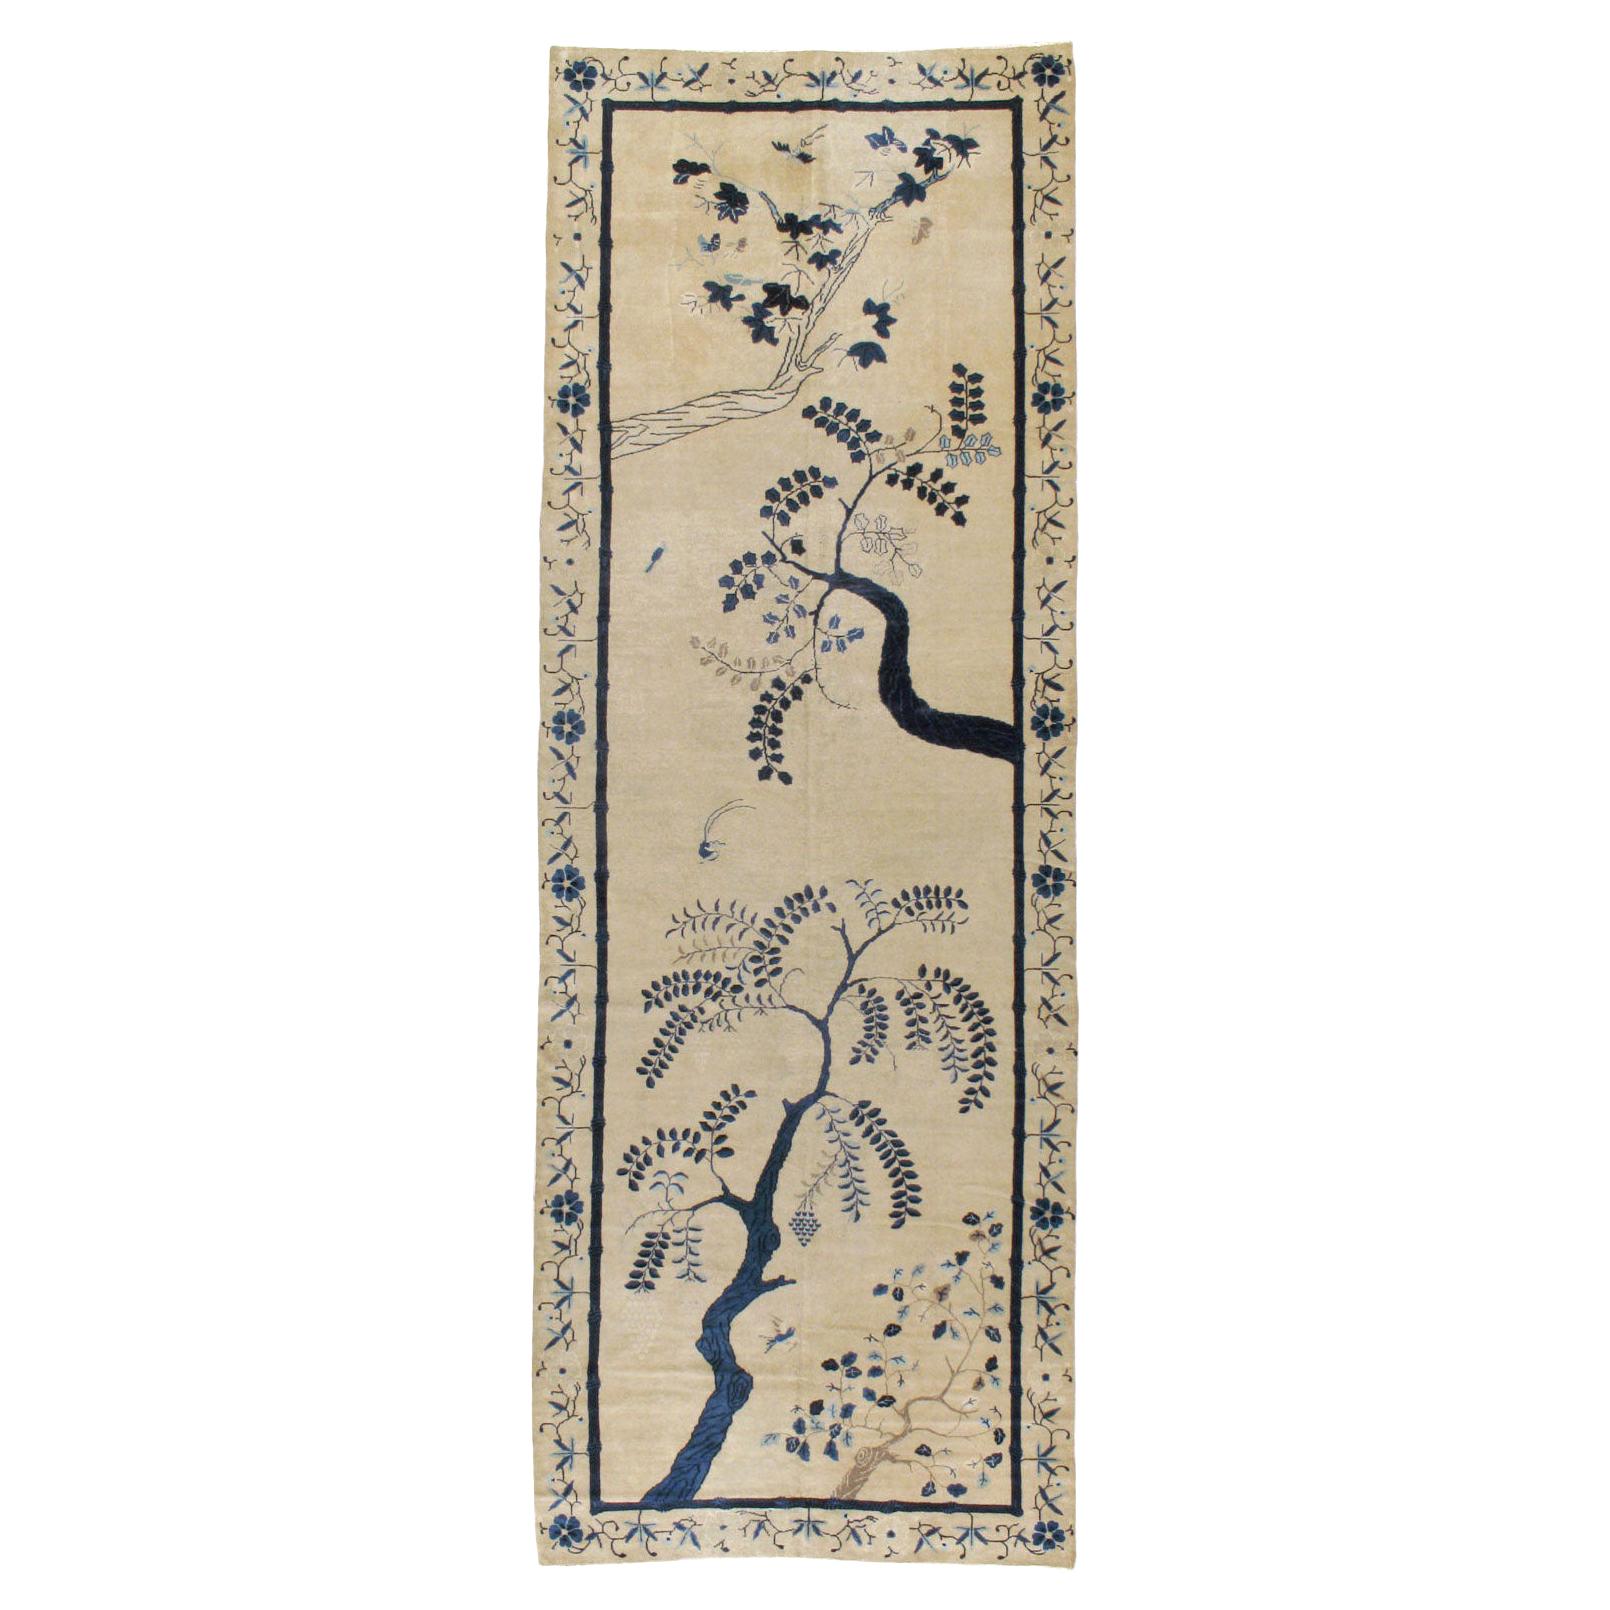 Tapis long de galerie chinois de Pékin du début du 20e siècle, fabriqué à la main, de couleur crème et bleu en vente